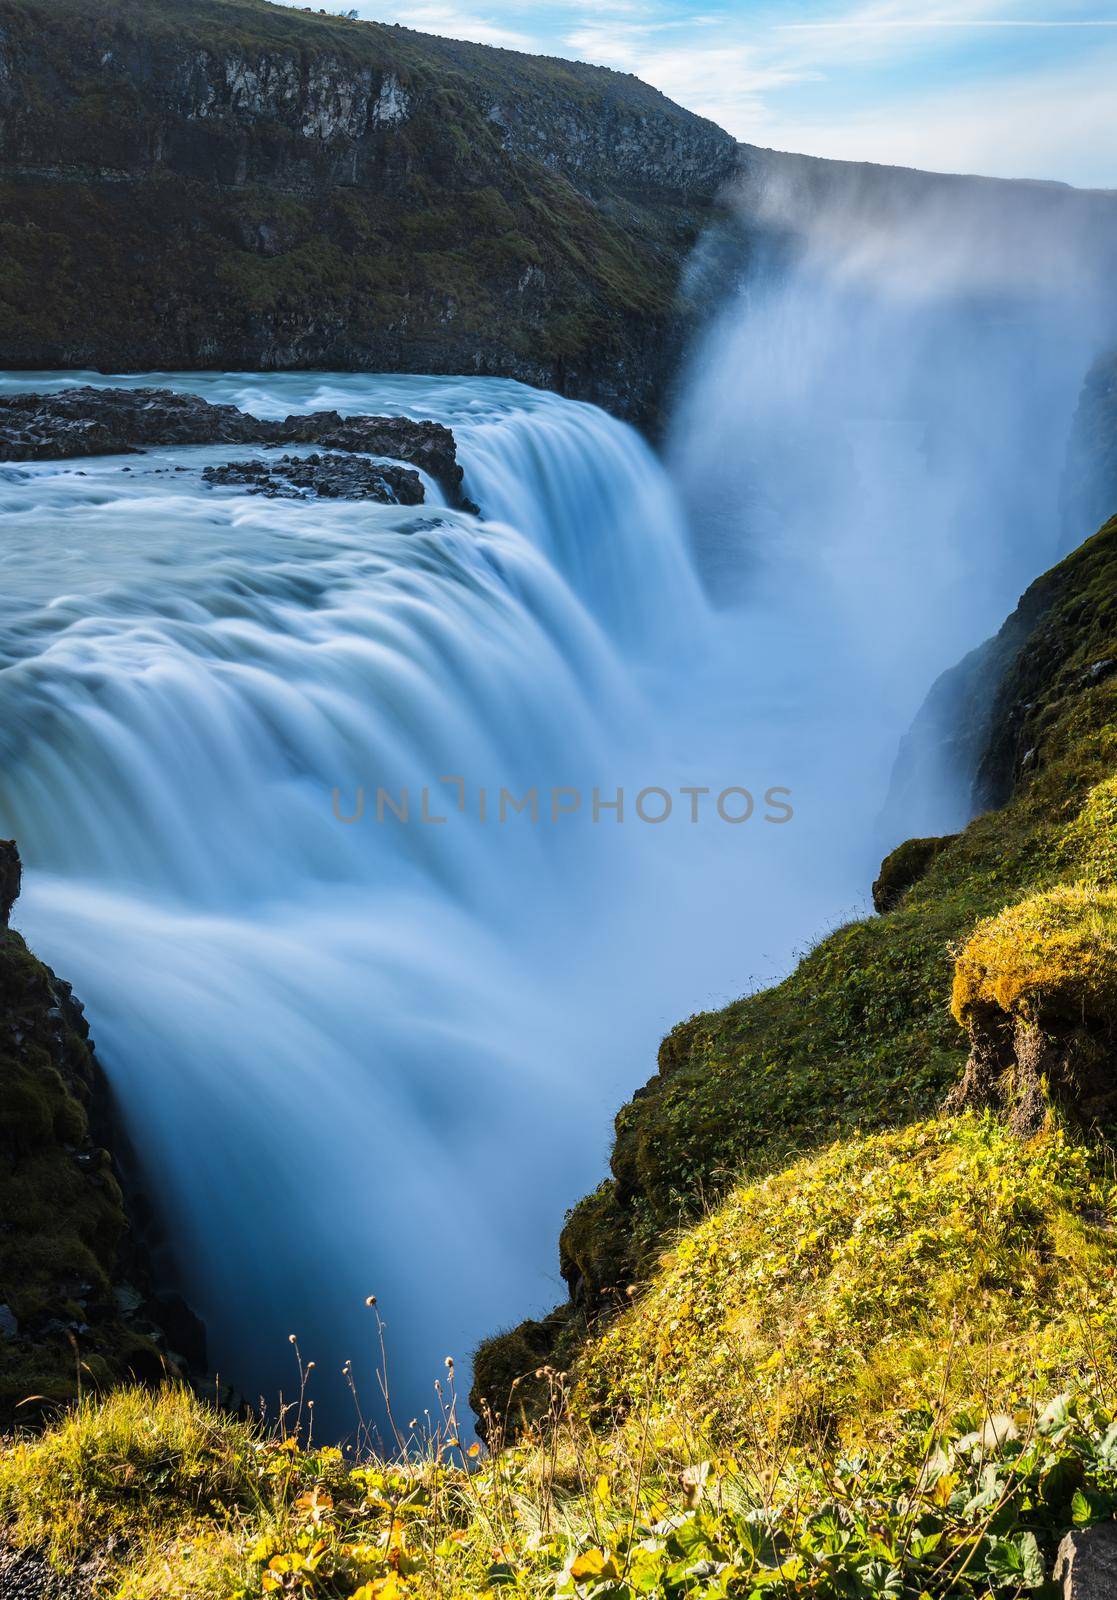 Spectacular Gullfoss Golden falls waterfall long exposure closeup view by FerradalFCG